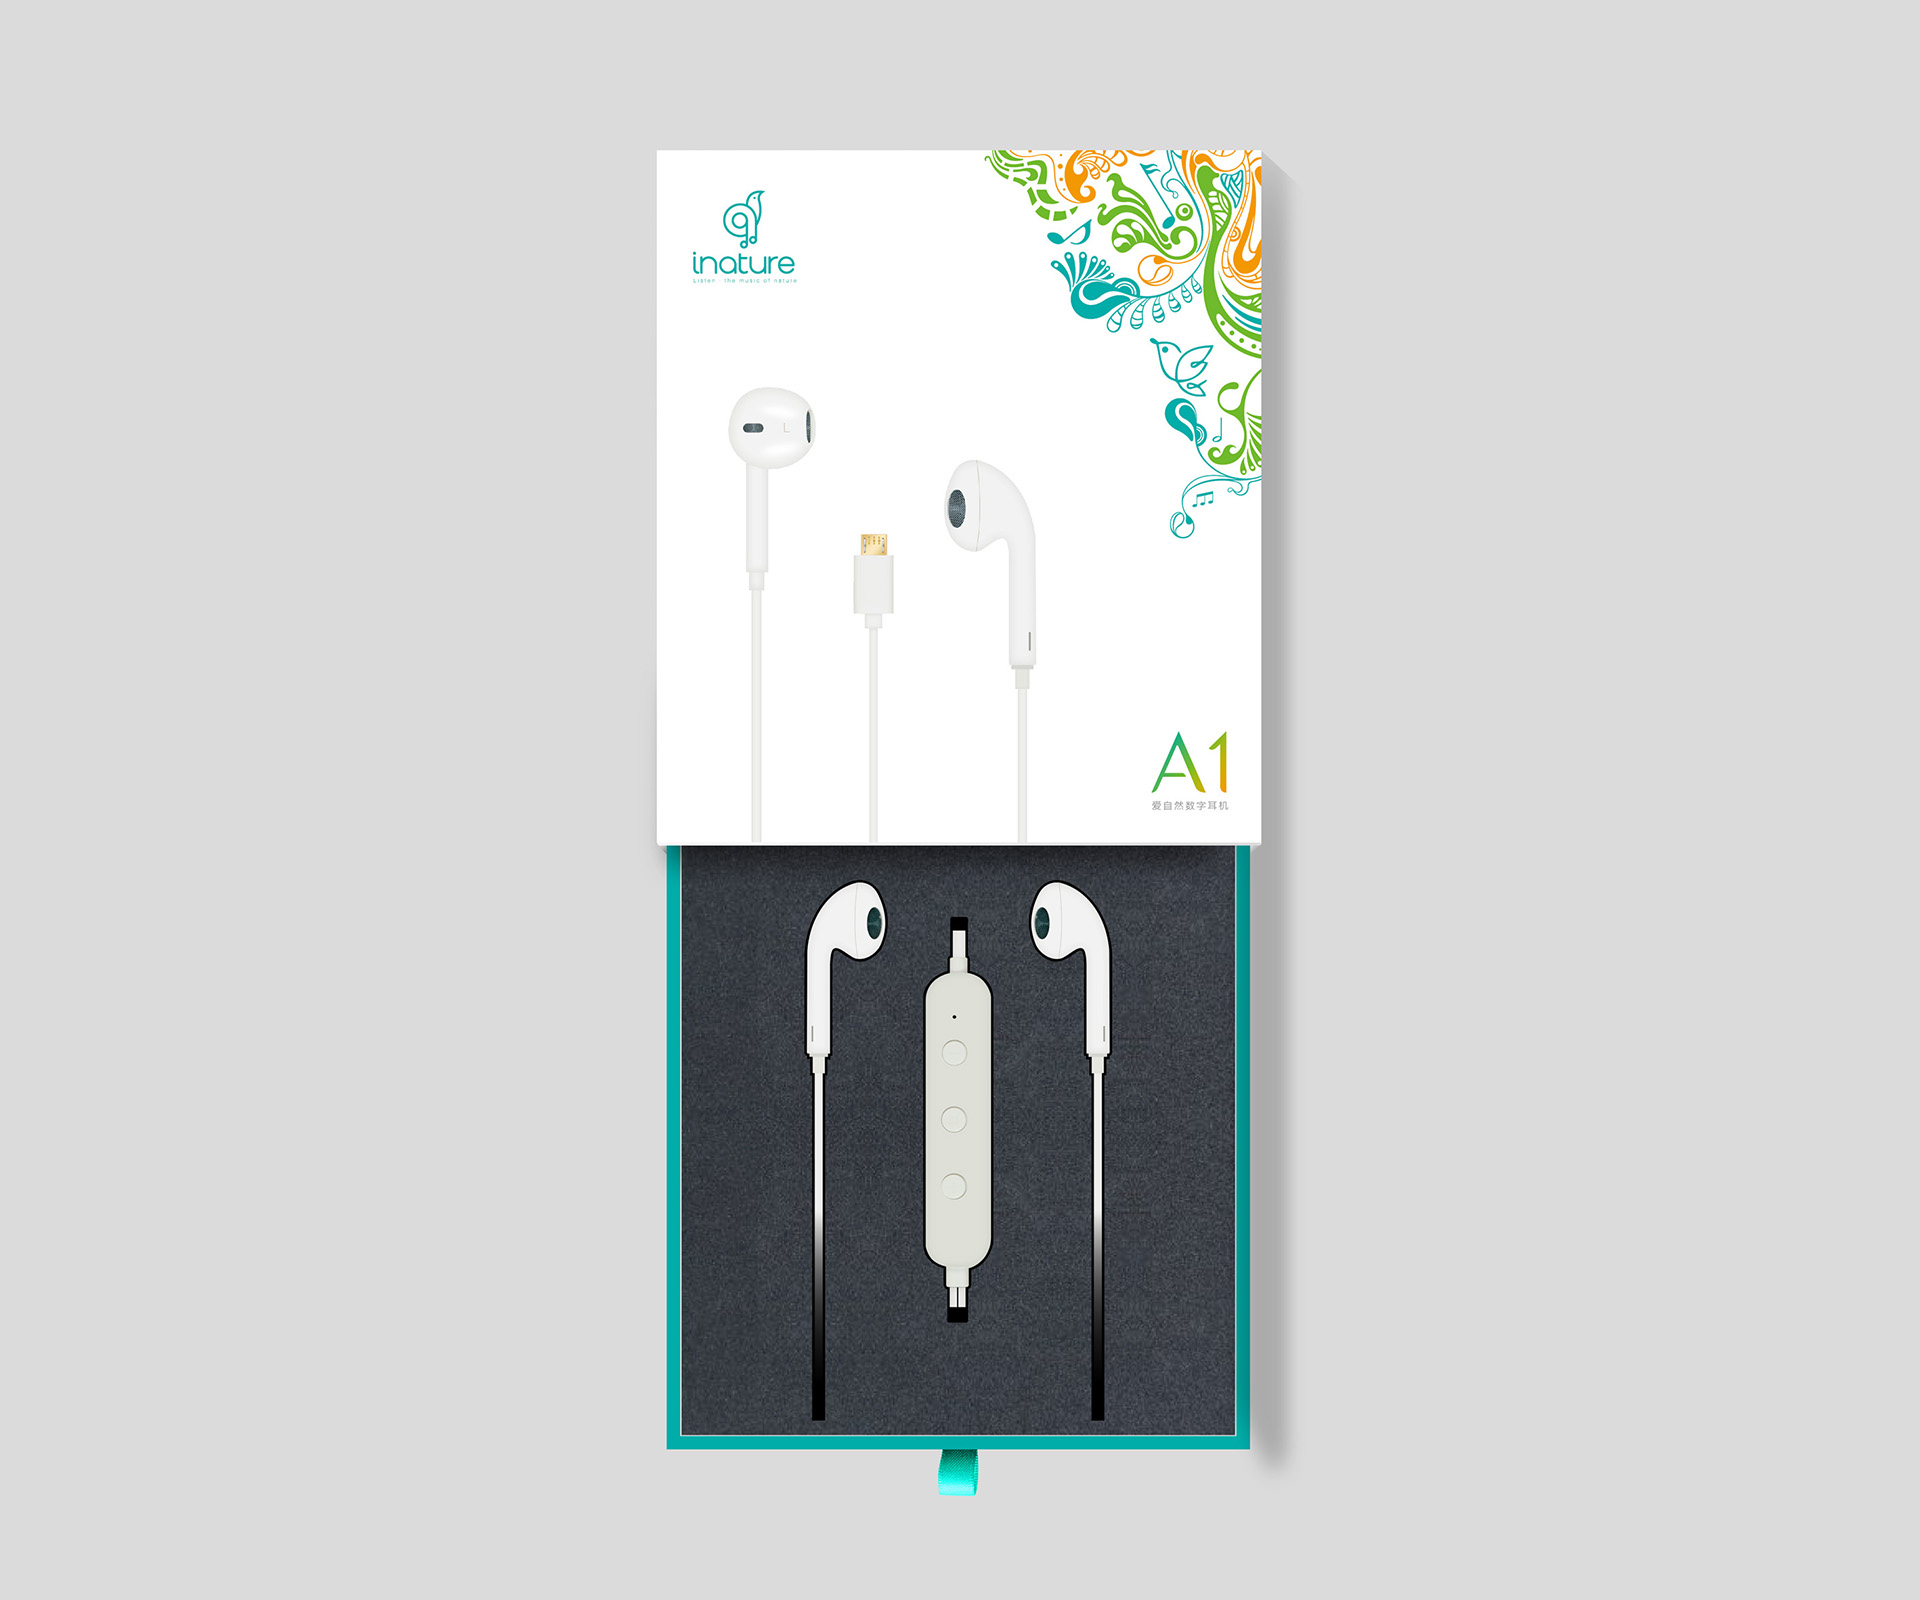 创意插画电子产品耳机包装设计案例